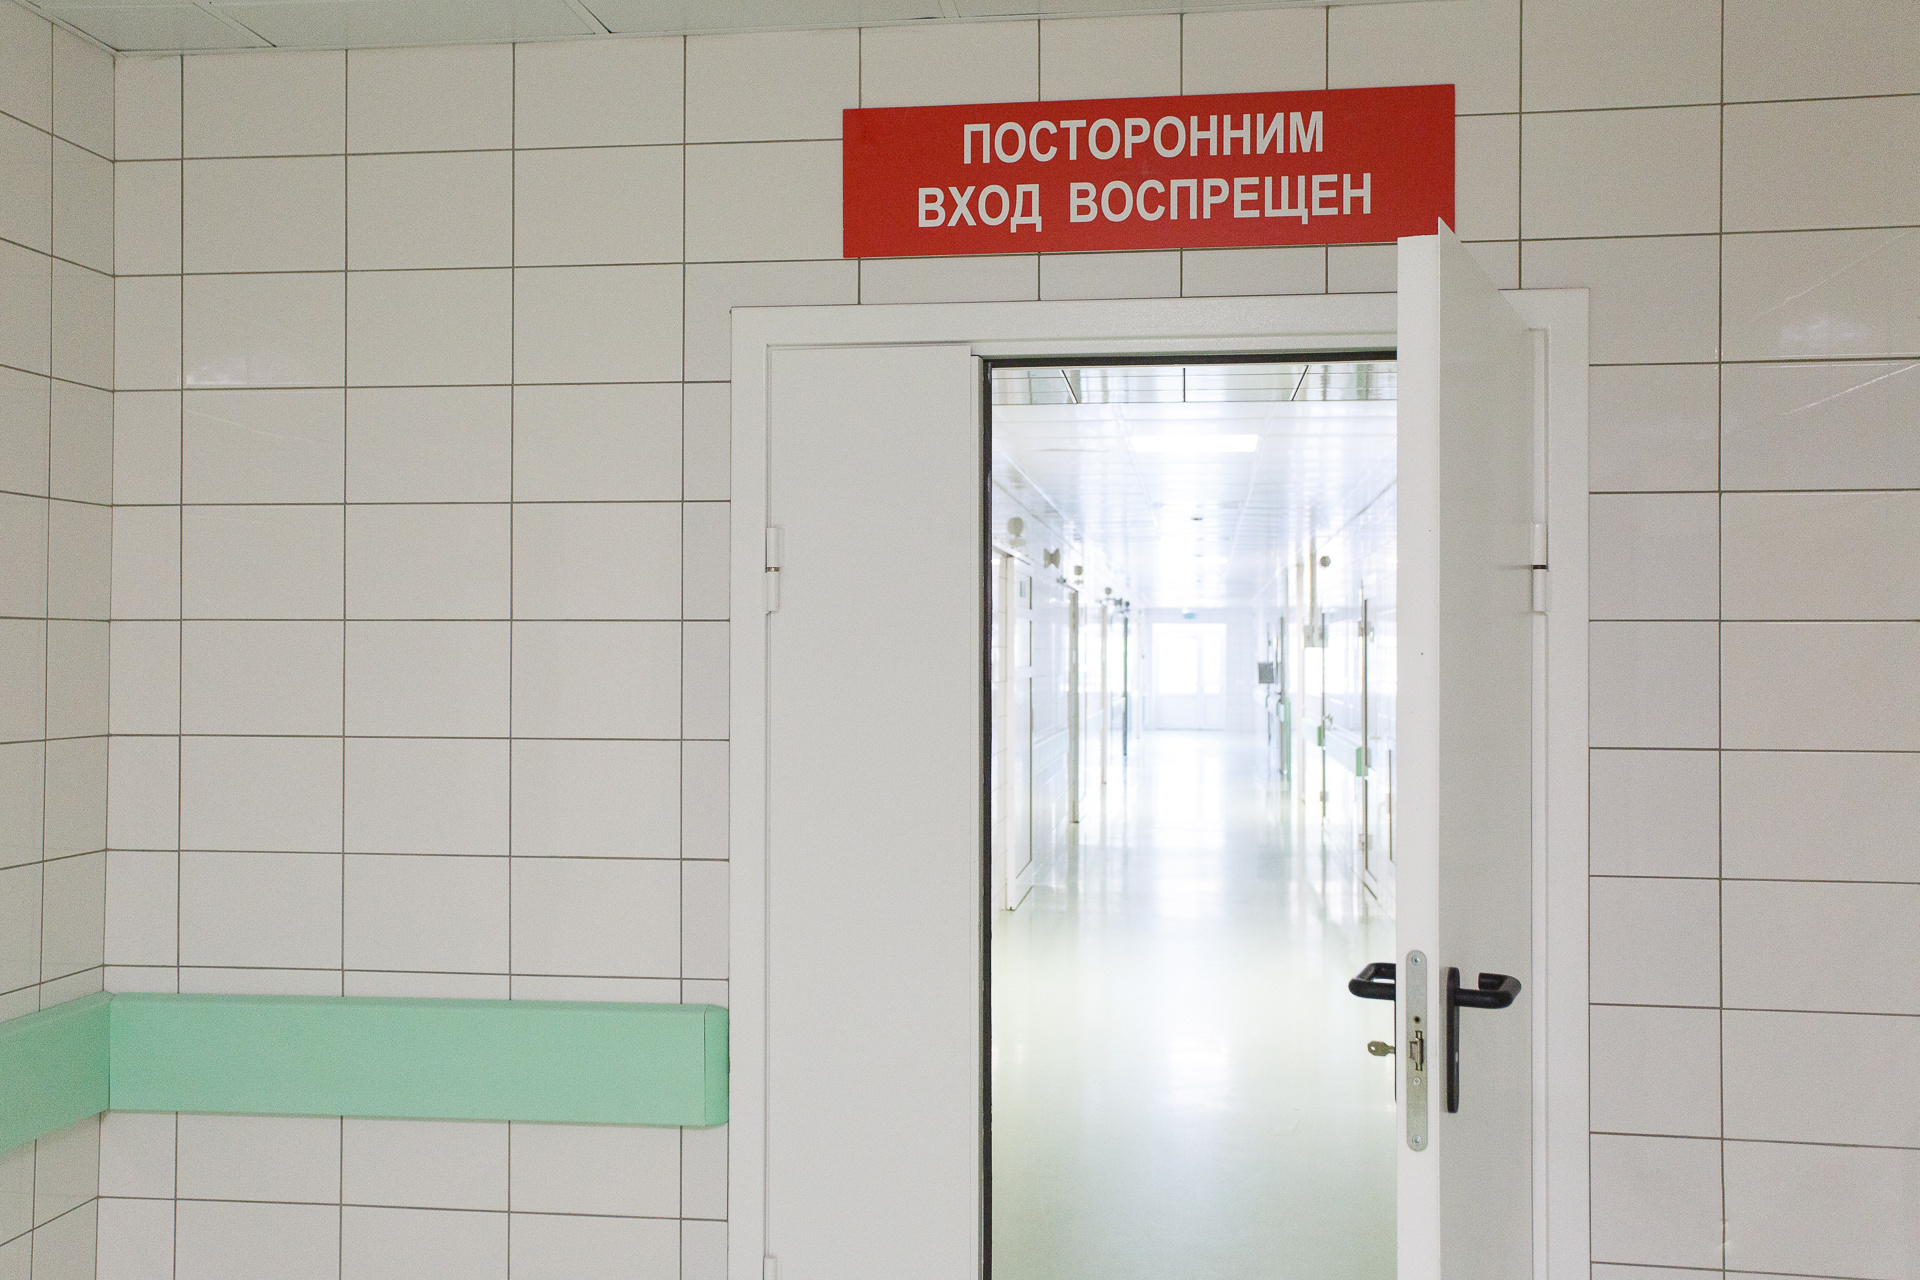 До июня 2019 года закона не было, а было письмо с памяткой Минздрава РФ, которым каждая больница распоряжалась так, как хотела